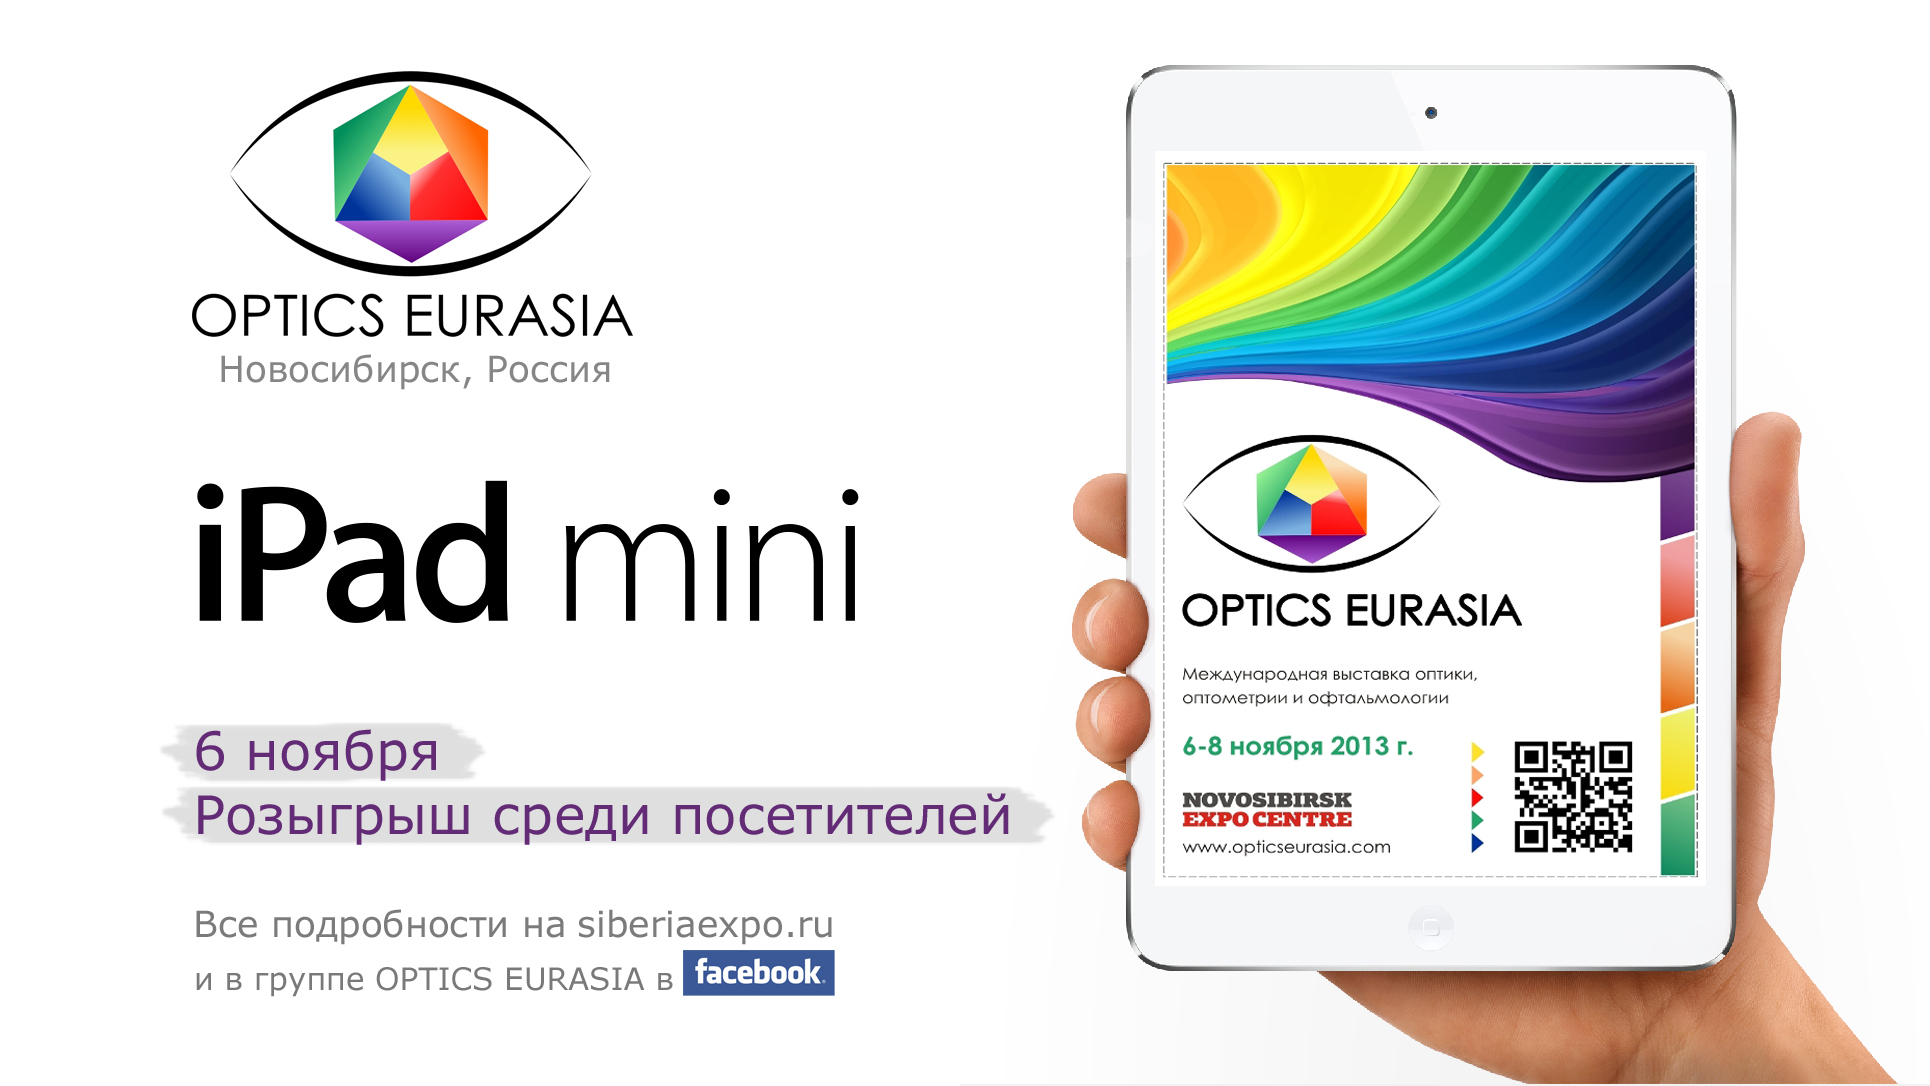 В рамках третьей специализированной выставки OPTICS EURASIA (Новосибирск, Россия) пройдёт розыгрыш iPad mini!